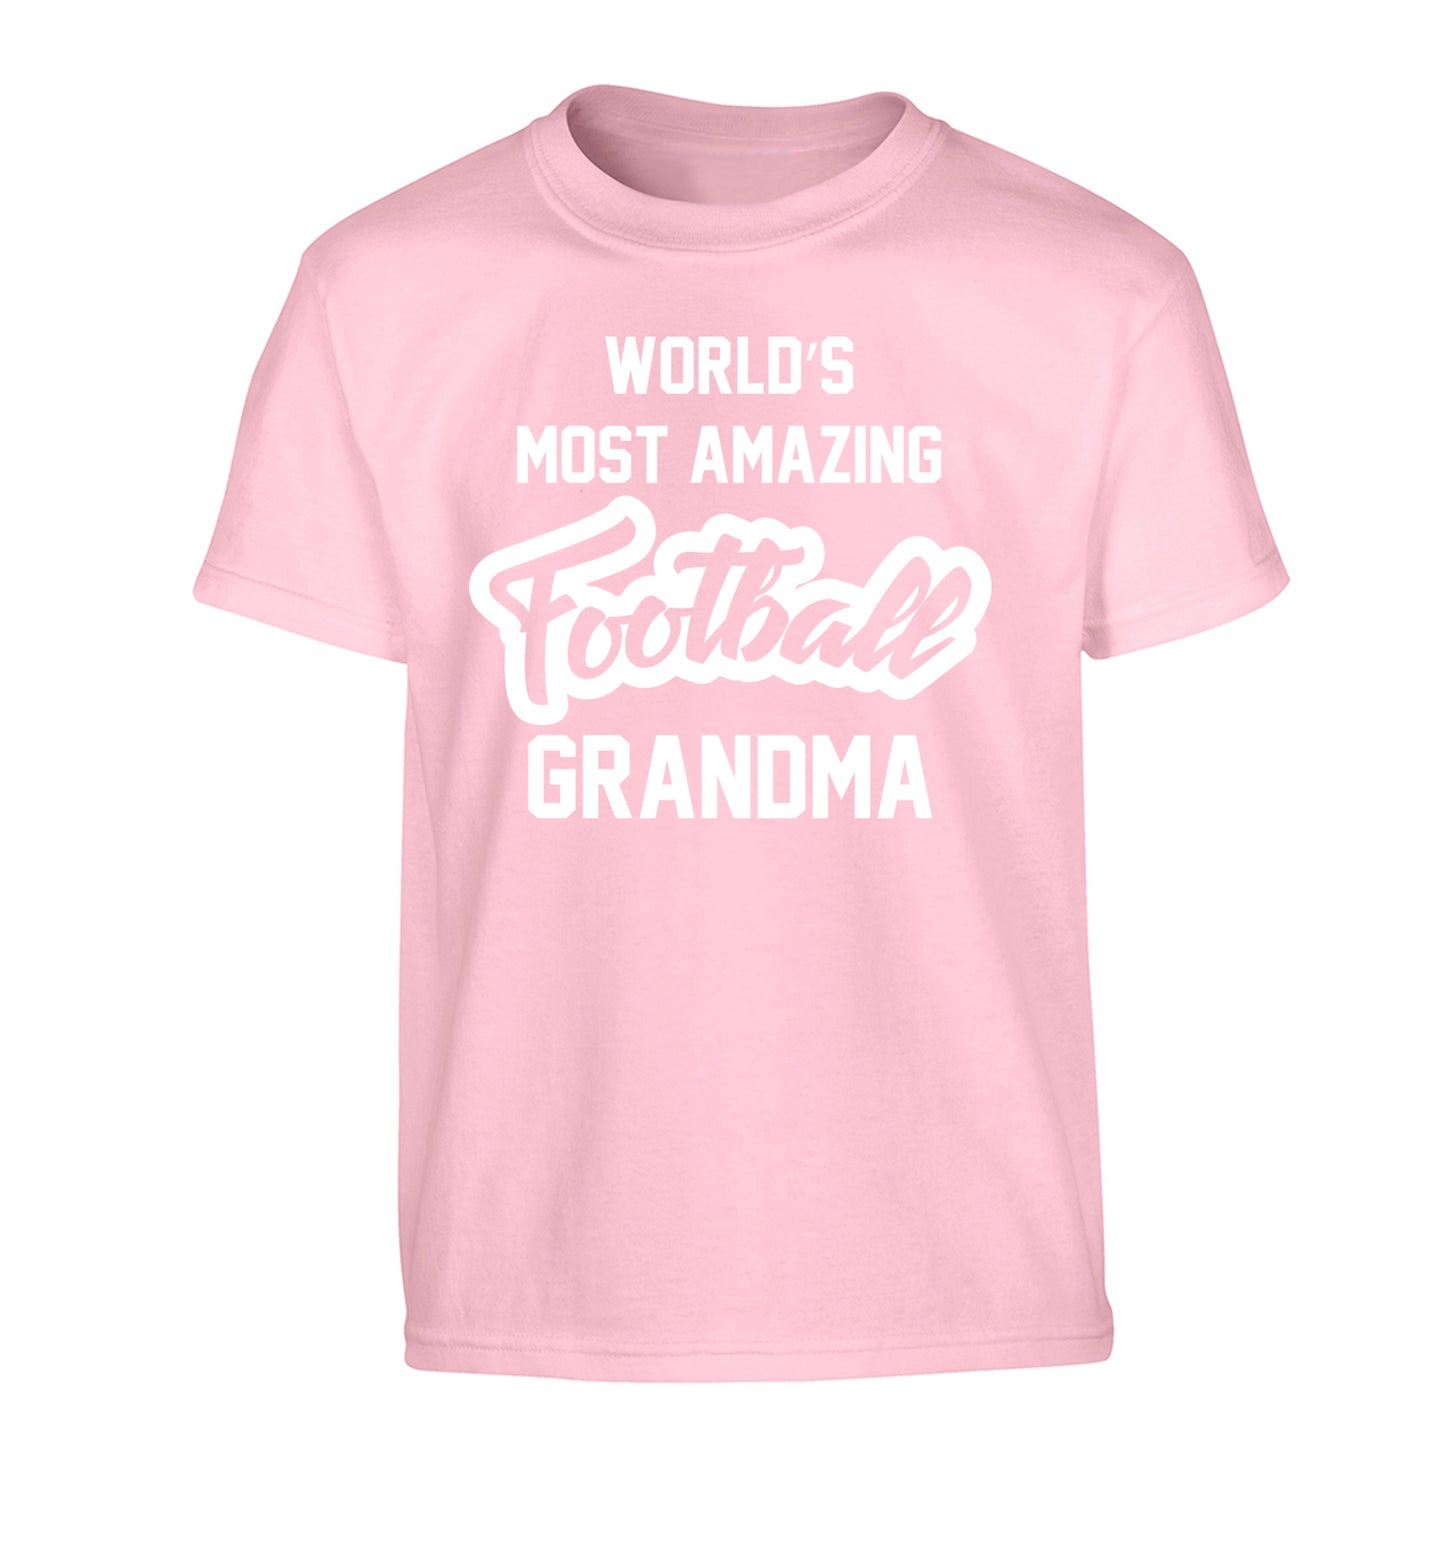 Worlds most amazing football grandma Children's light pink Tshirt 12-14 Years